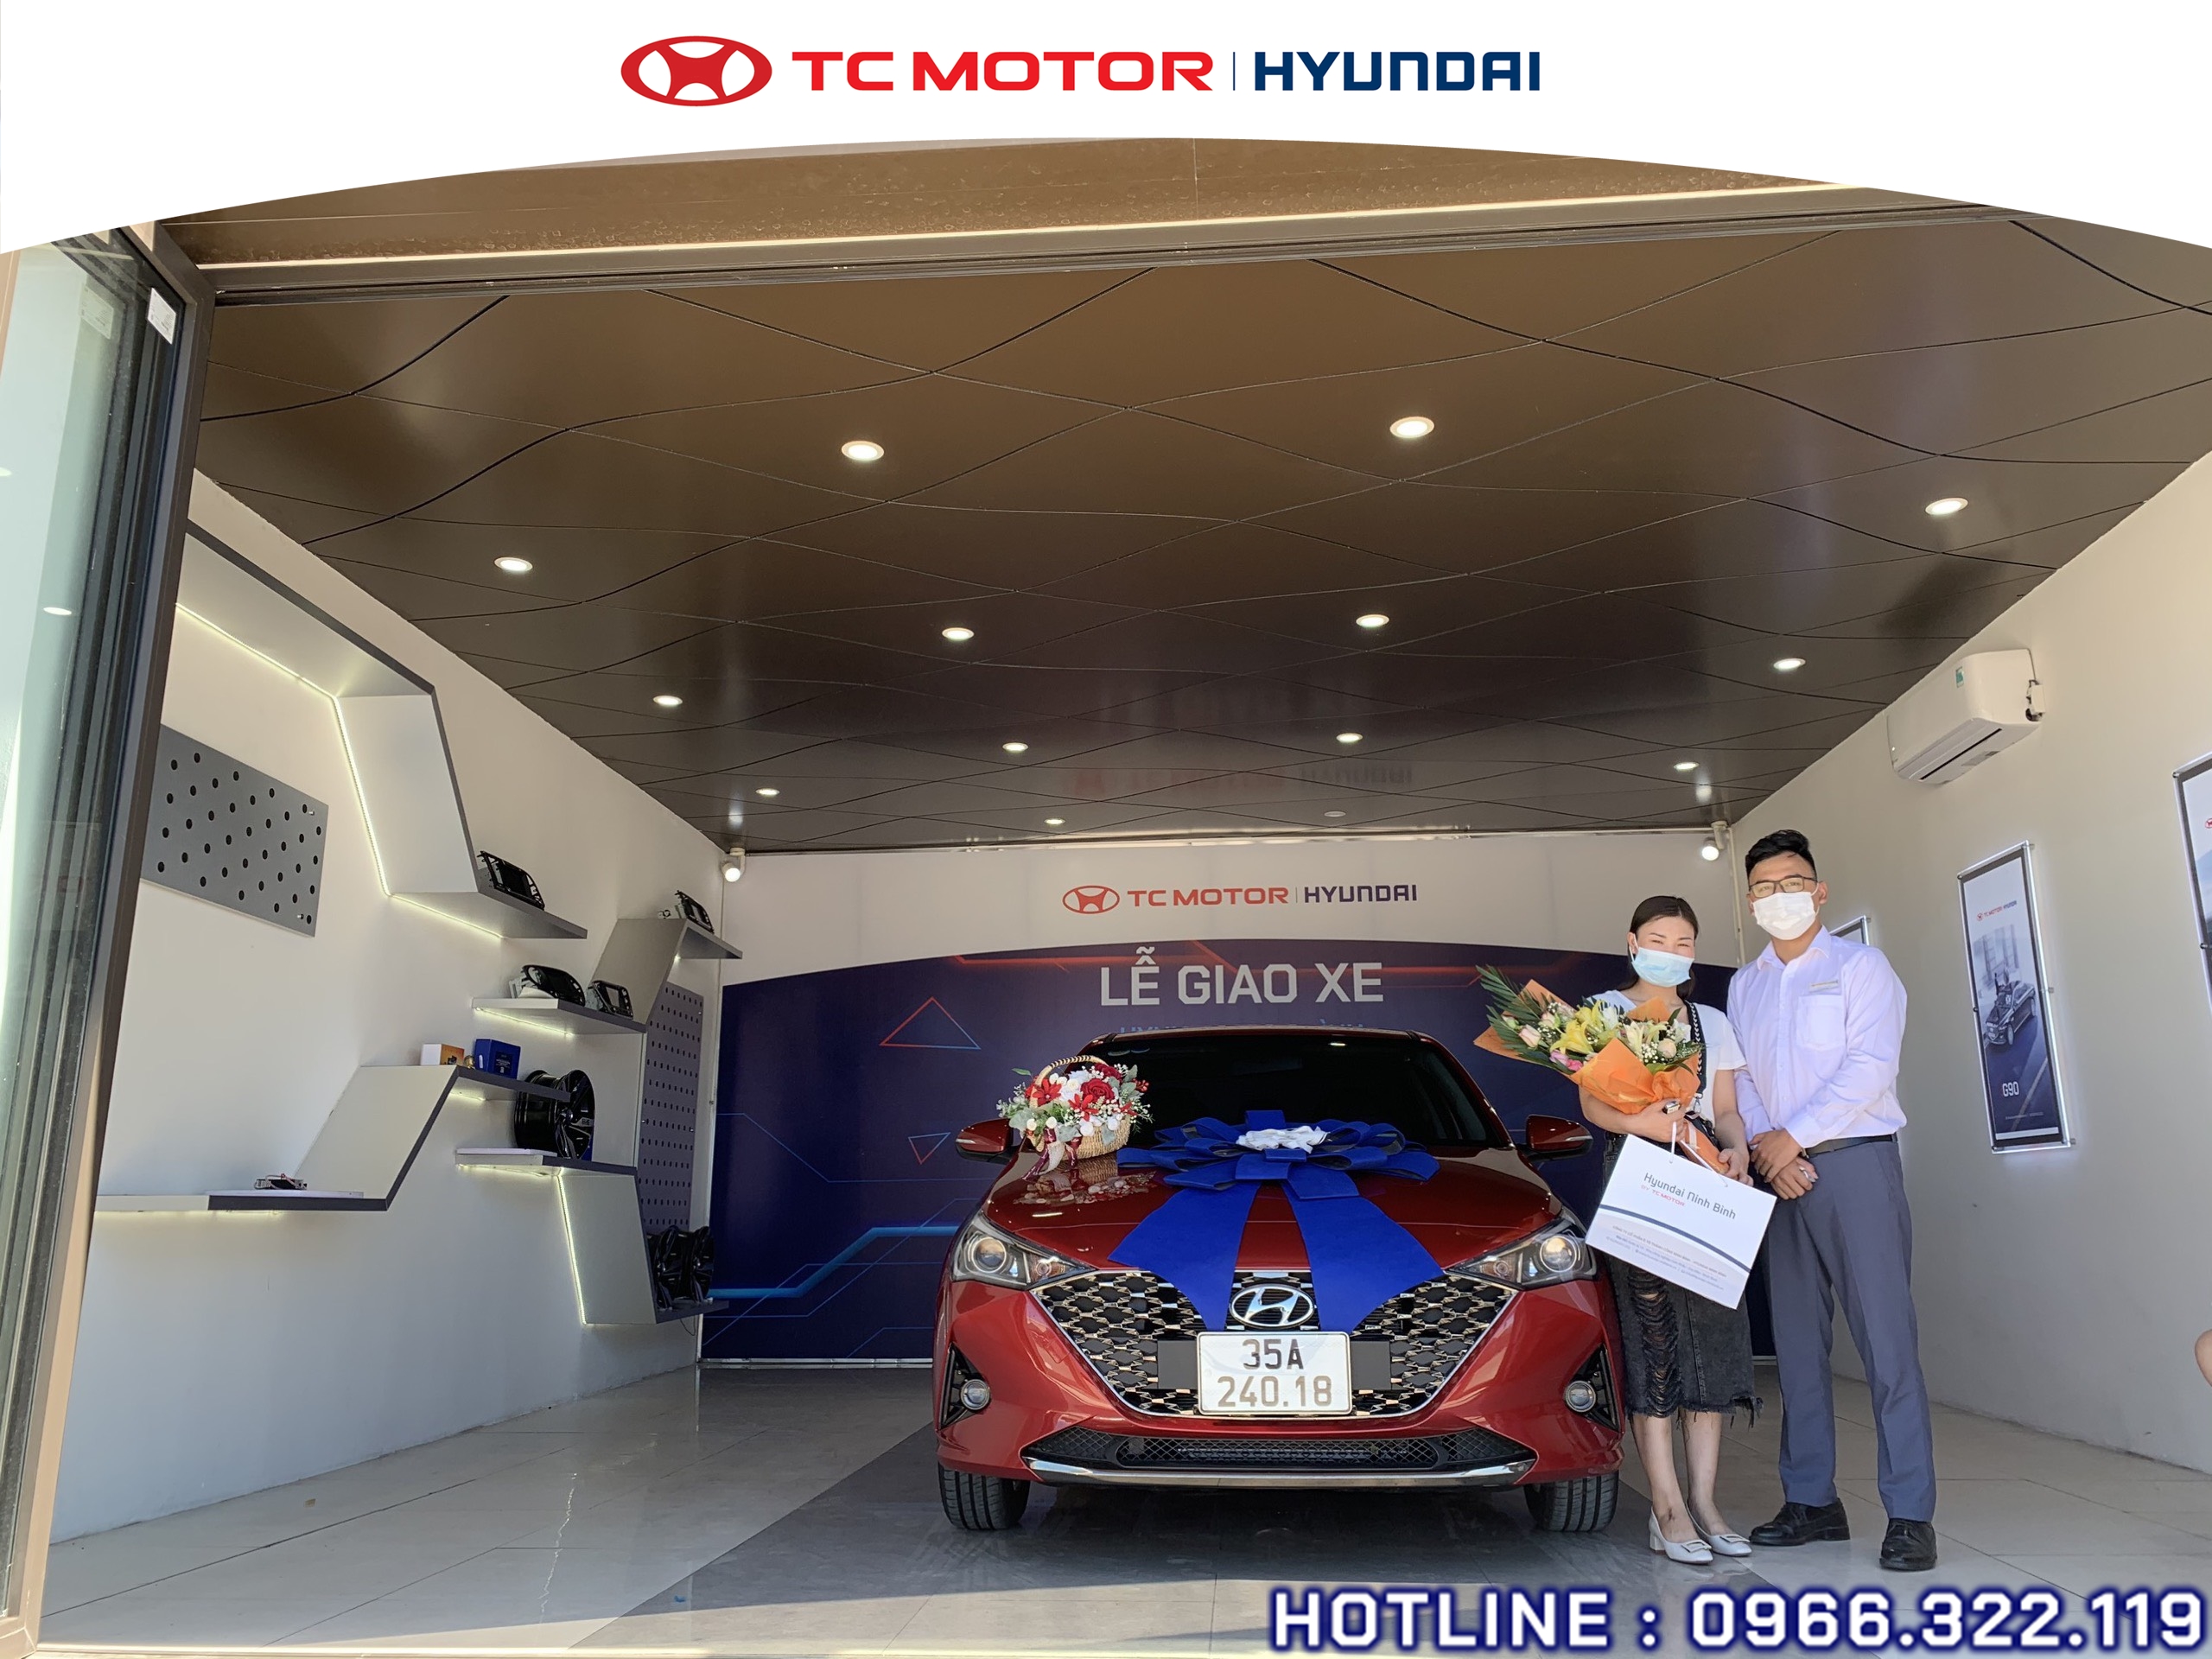 Lễ giao xe tới khách hàng tháng 6 tại Hyundai Ninh Bình